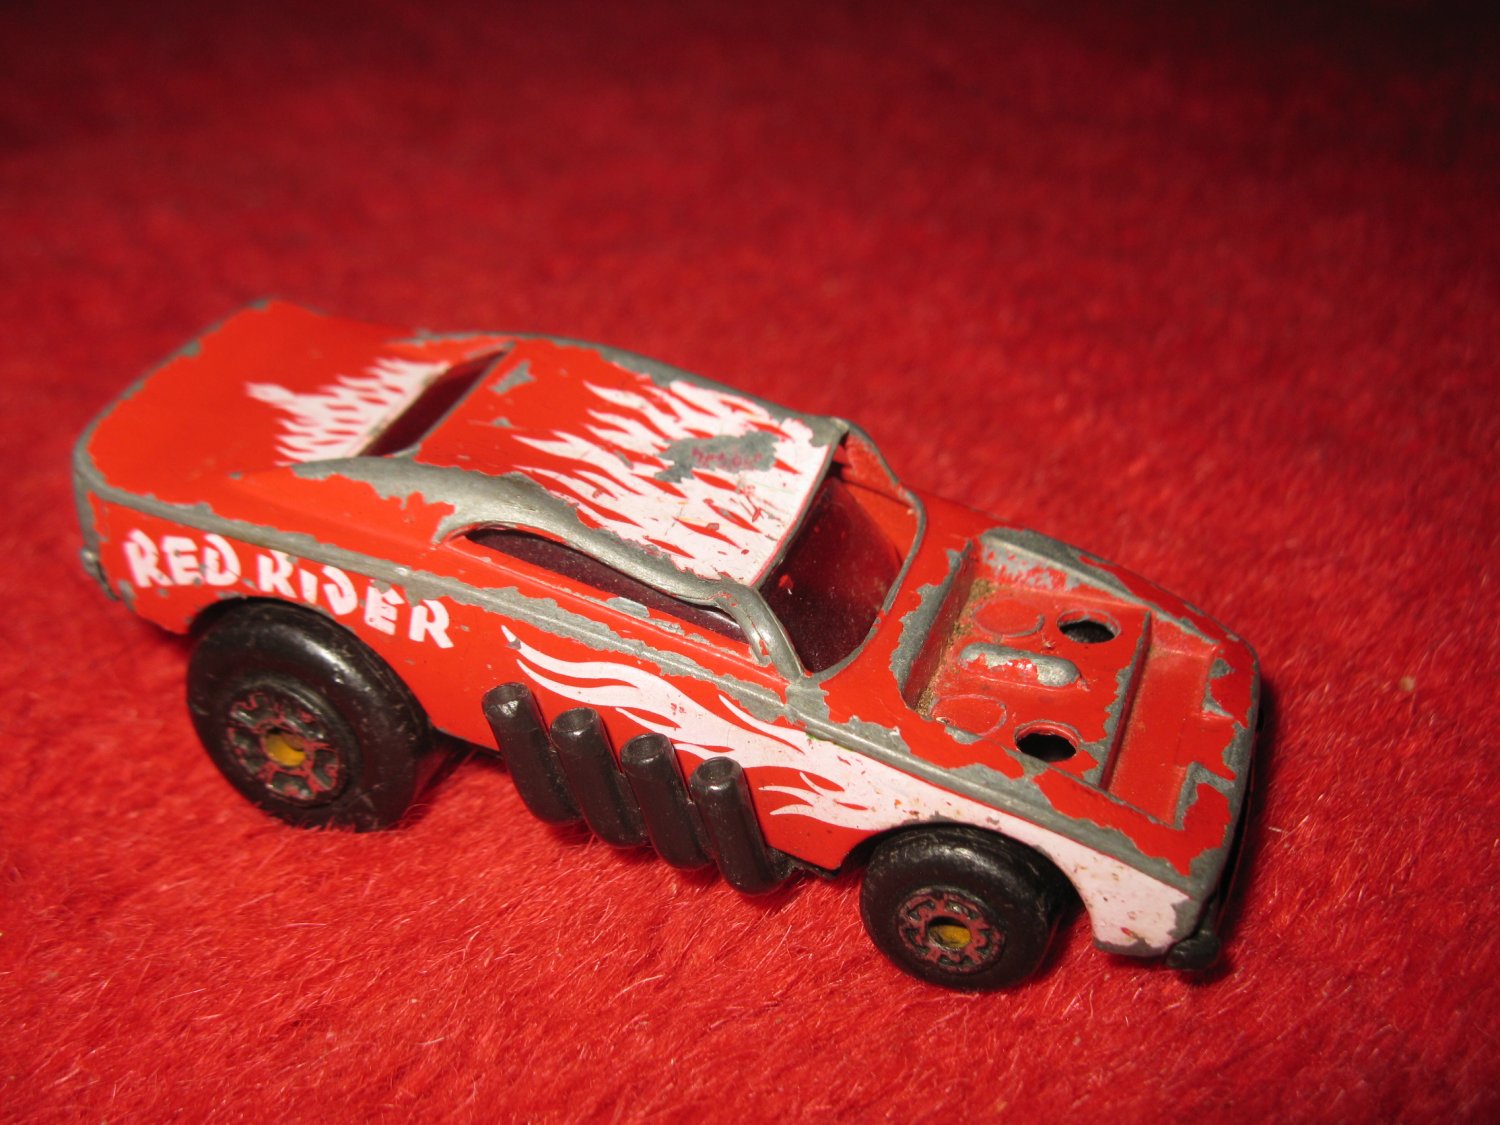 1972 red rider matchbox car